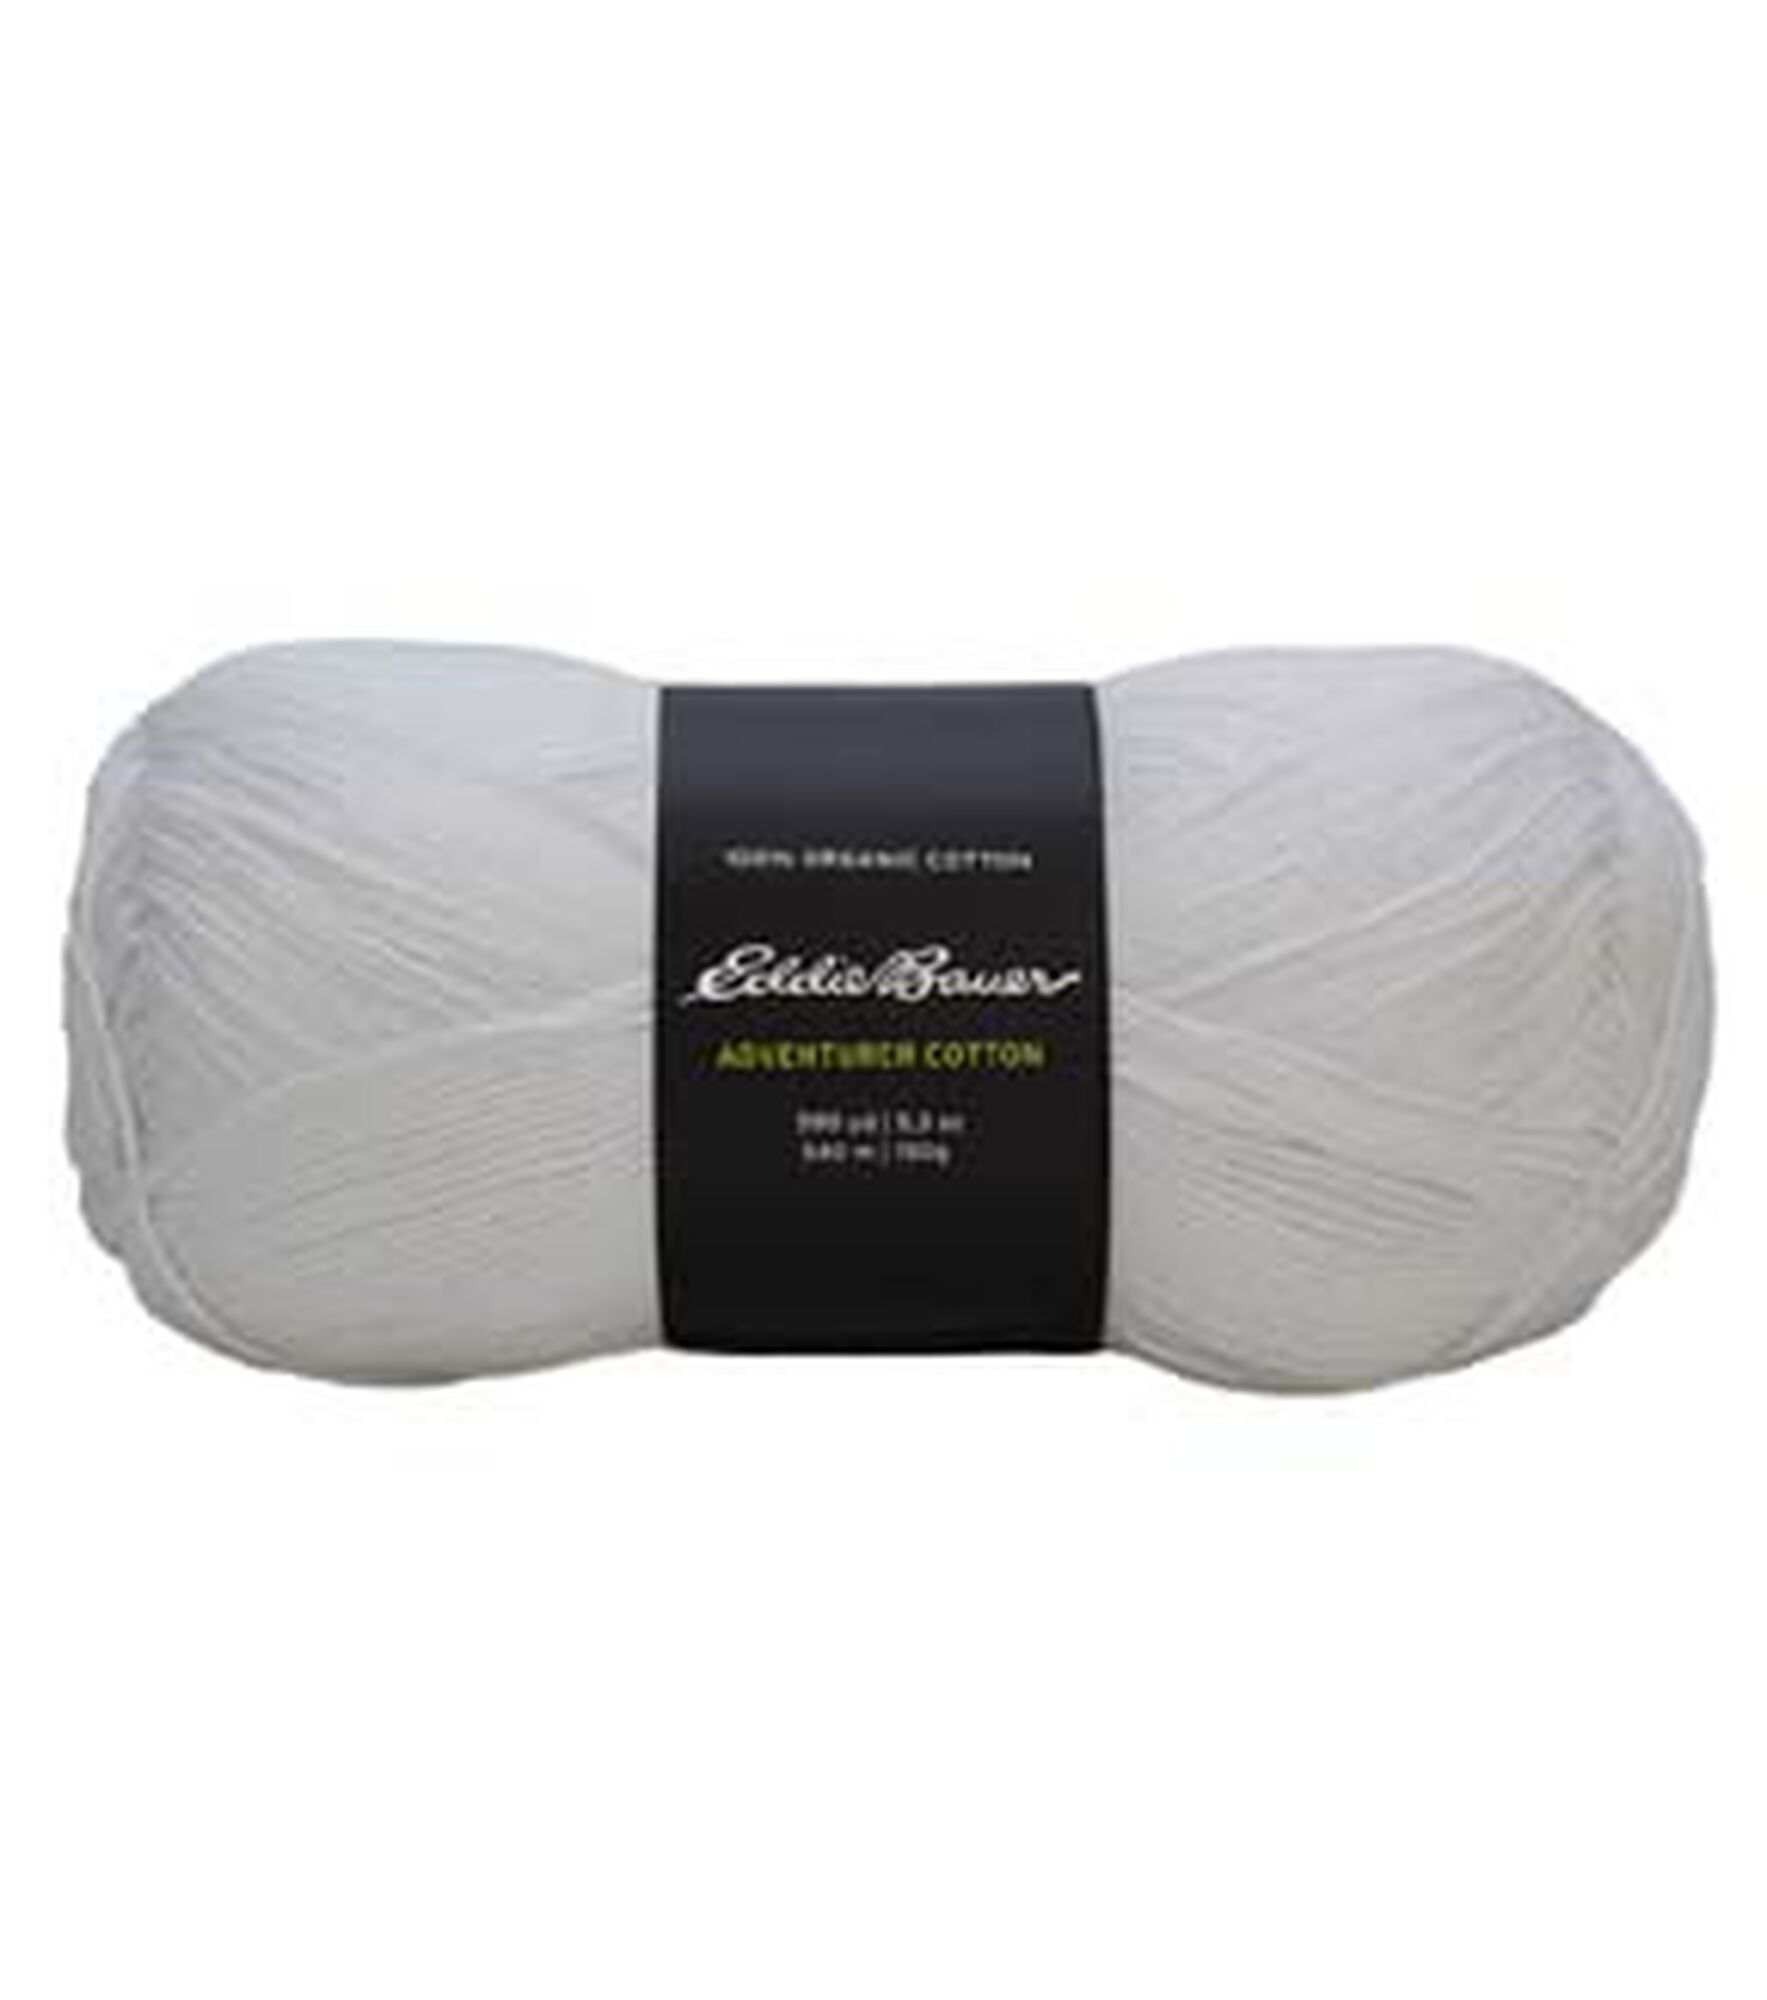 Joann Essential Cotton Yarn by K+C 